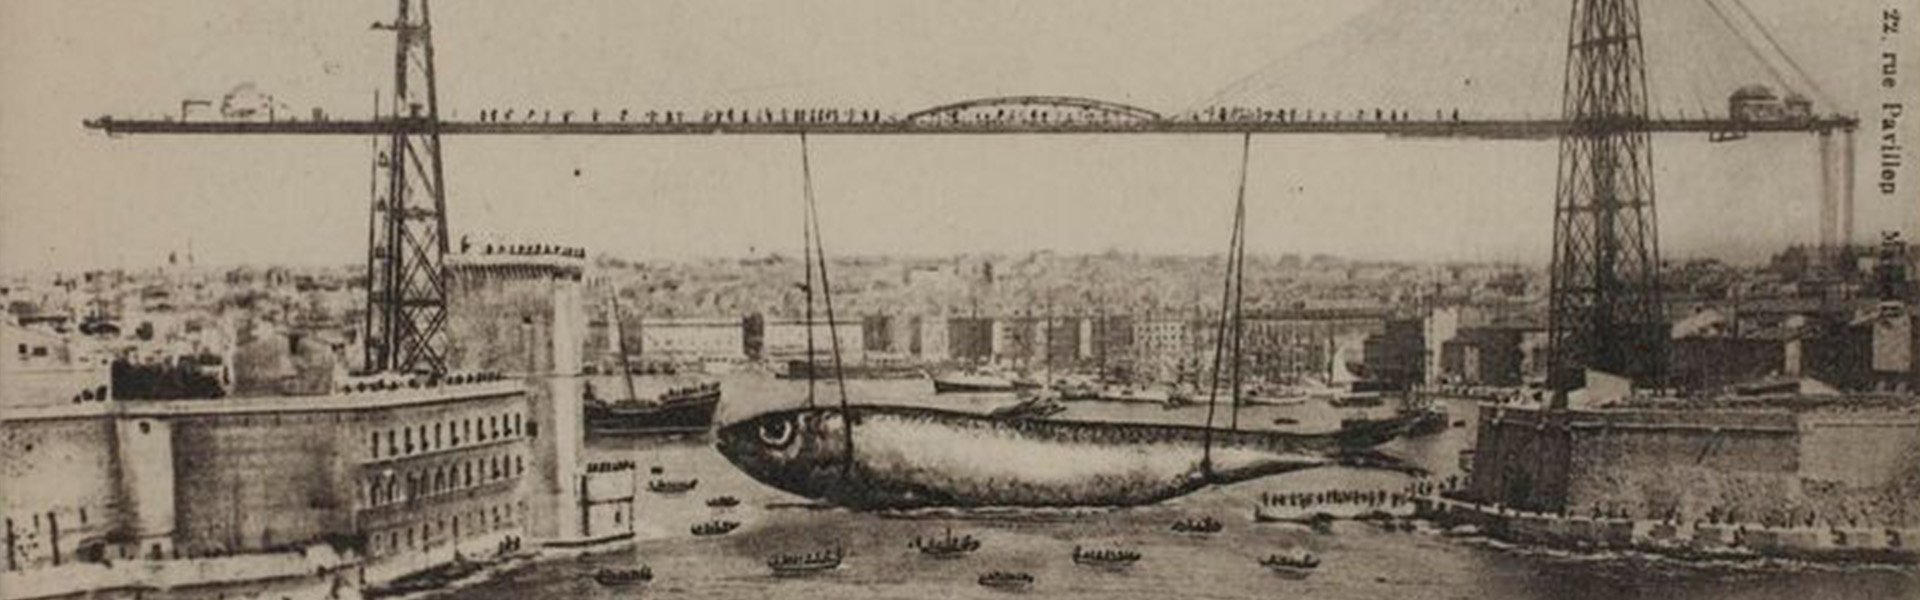 Il était une fois une sardine qui aurait bouché le port de Marseille…